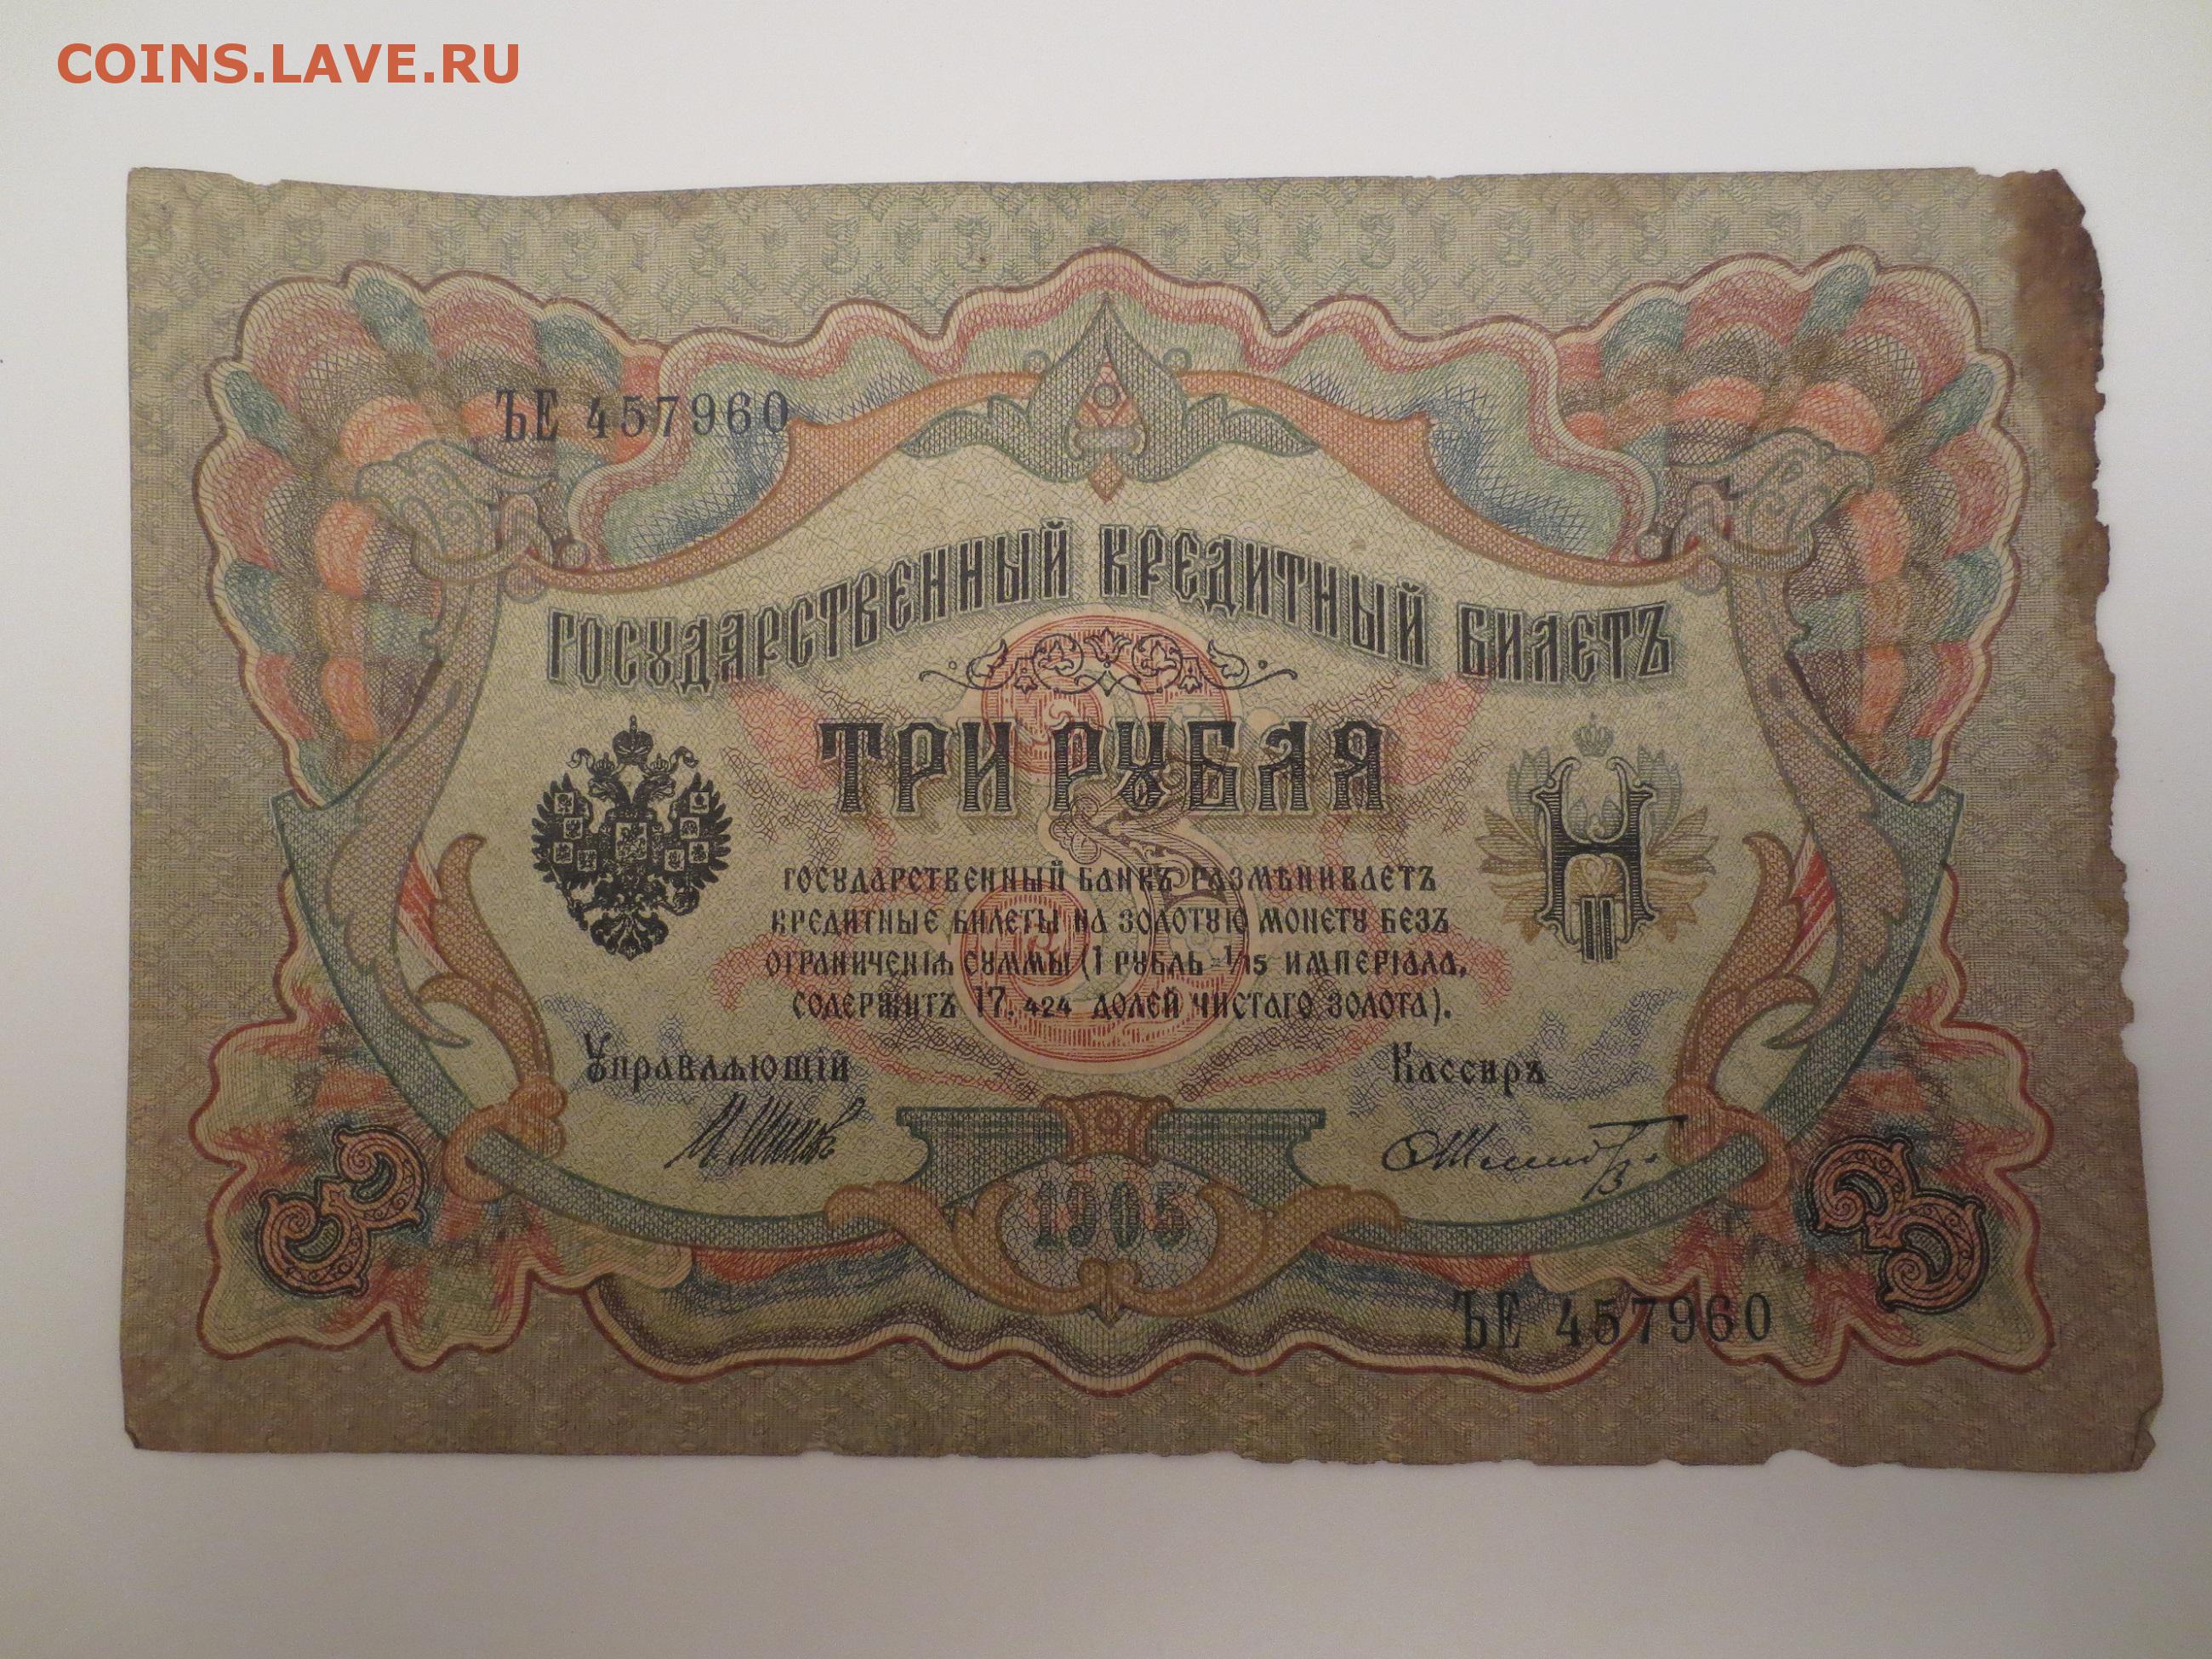 3 рубля 1905 года. 10 Рублей 1905 года года. Банкнота 3 рубля Царская 1905. Три рубля 1905 года цена.